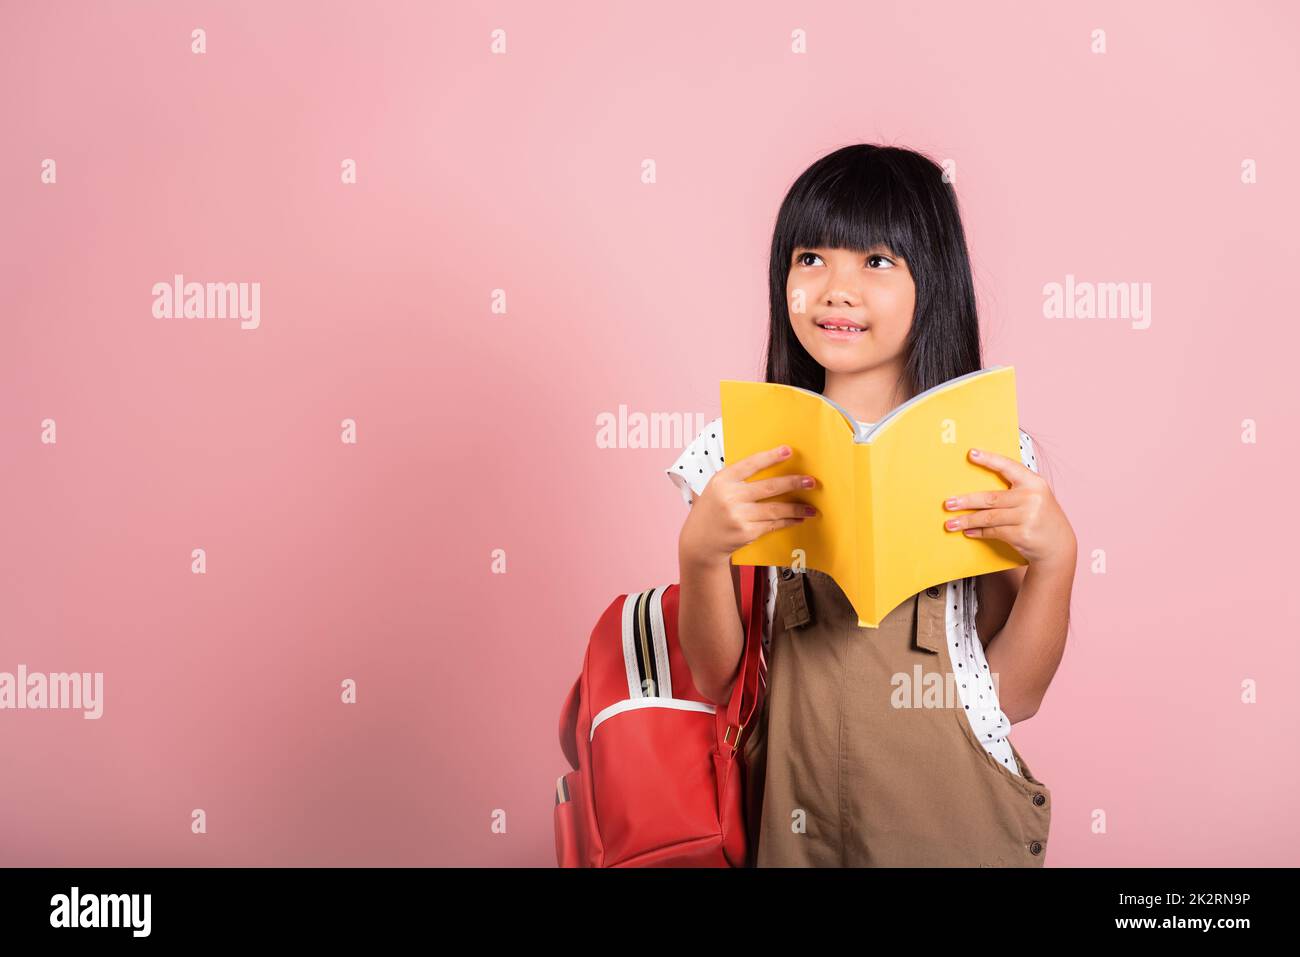 Petit enfant asiatique de 10 ans tenant et lisant un livre jaune Banque D'Images